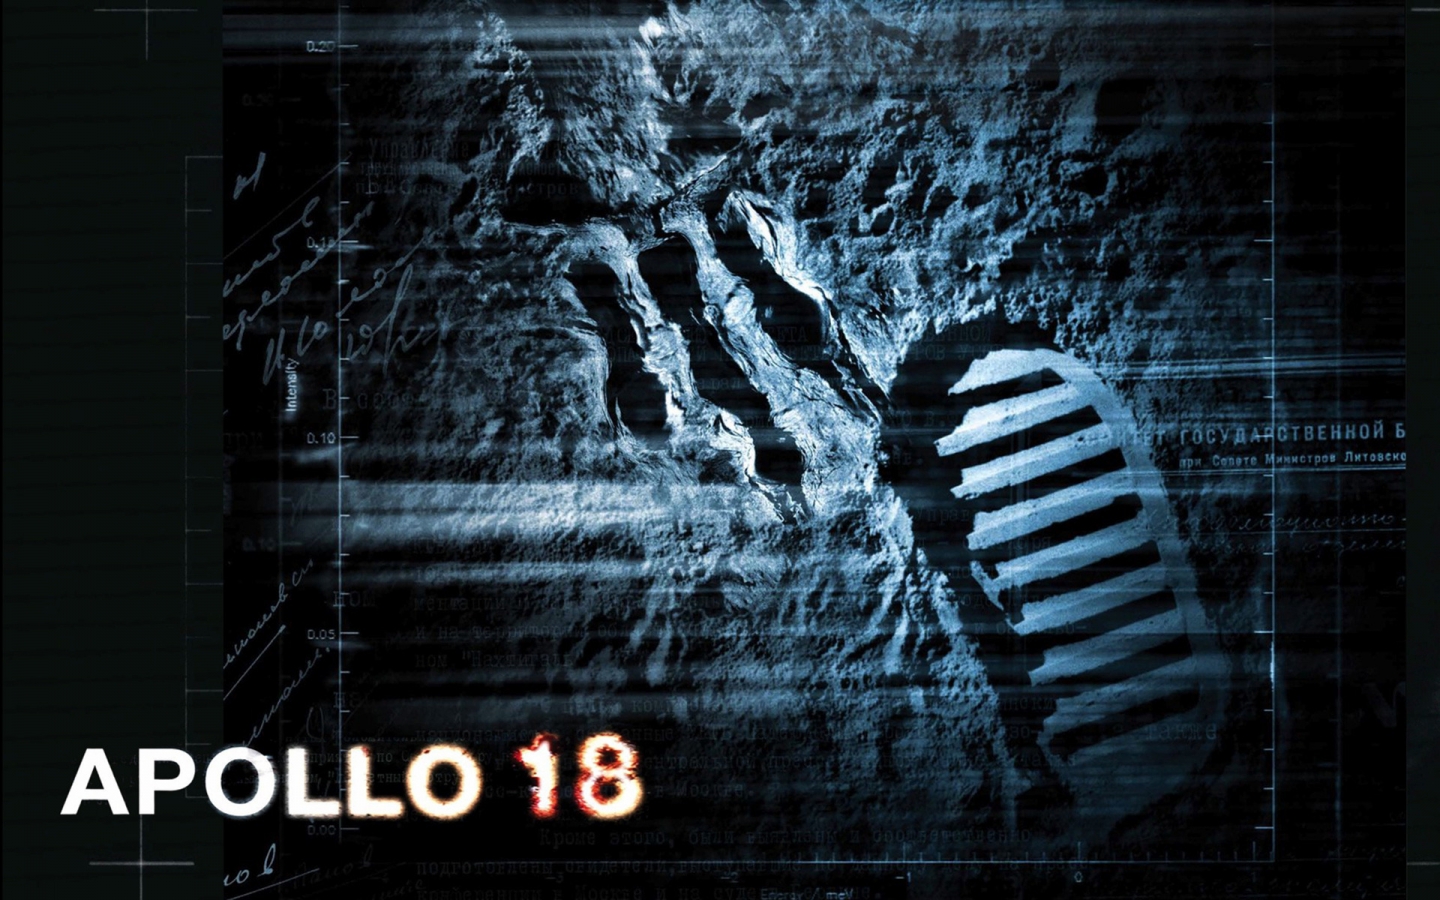 Apollo 18 Movie for 1440 x 900 widescreen resolution